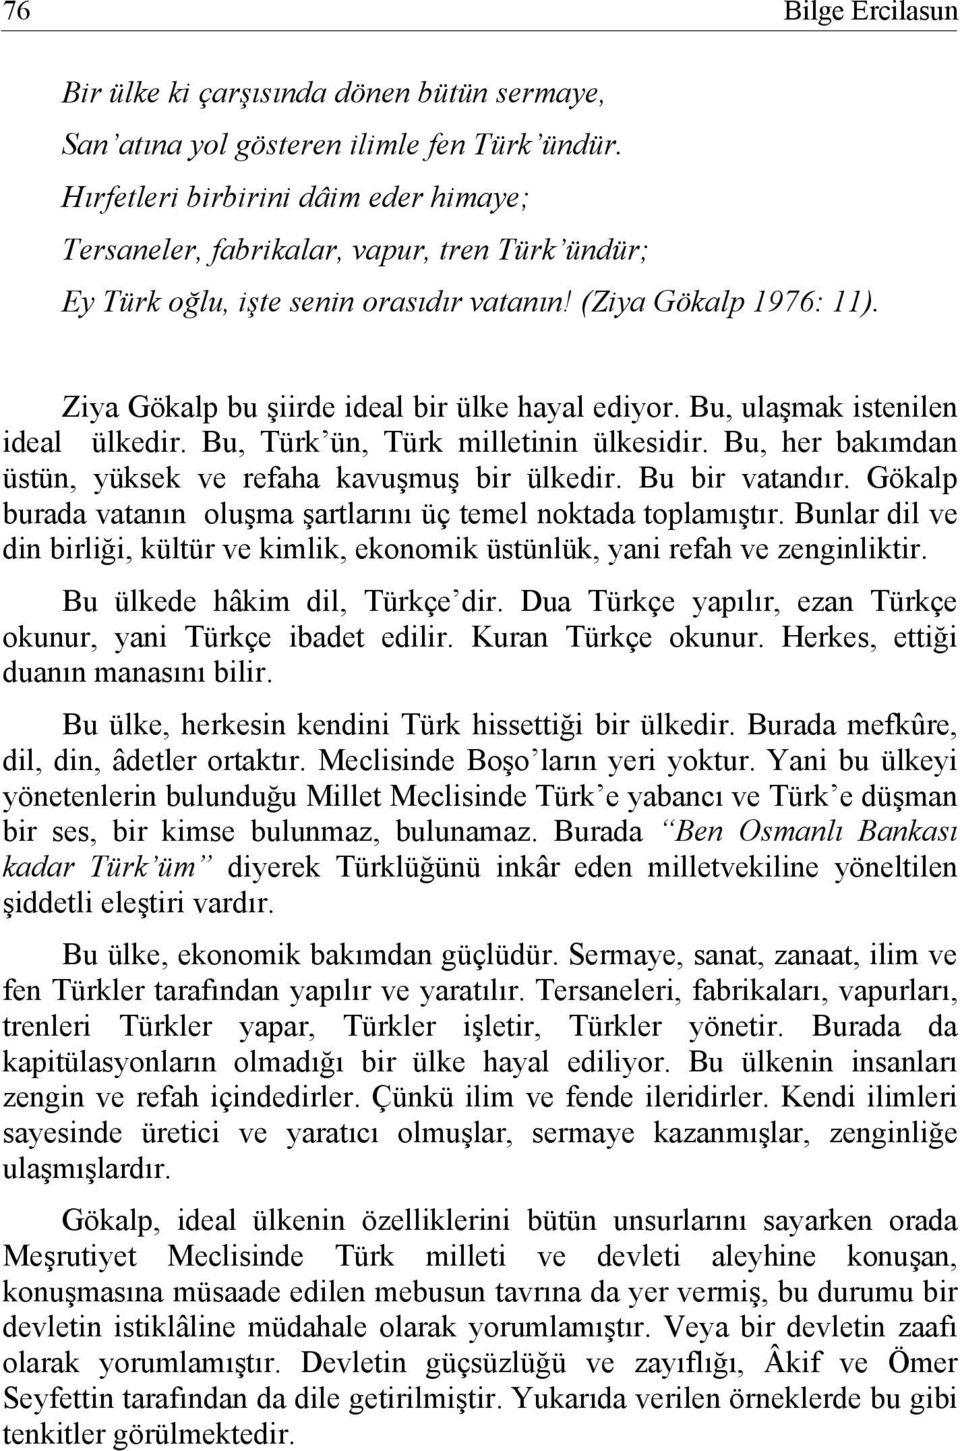 Ziya Gökalp bu şiirde ideal bir ülke hayal ediyor. Bu, ulaşmak istenilen ideal ülkedir. Bu, Türk ün, Türk milletinin ülkesidir. Bu, her bakımdan üstün, yüksek ve refaha kavuşmuş bir ülkedir.